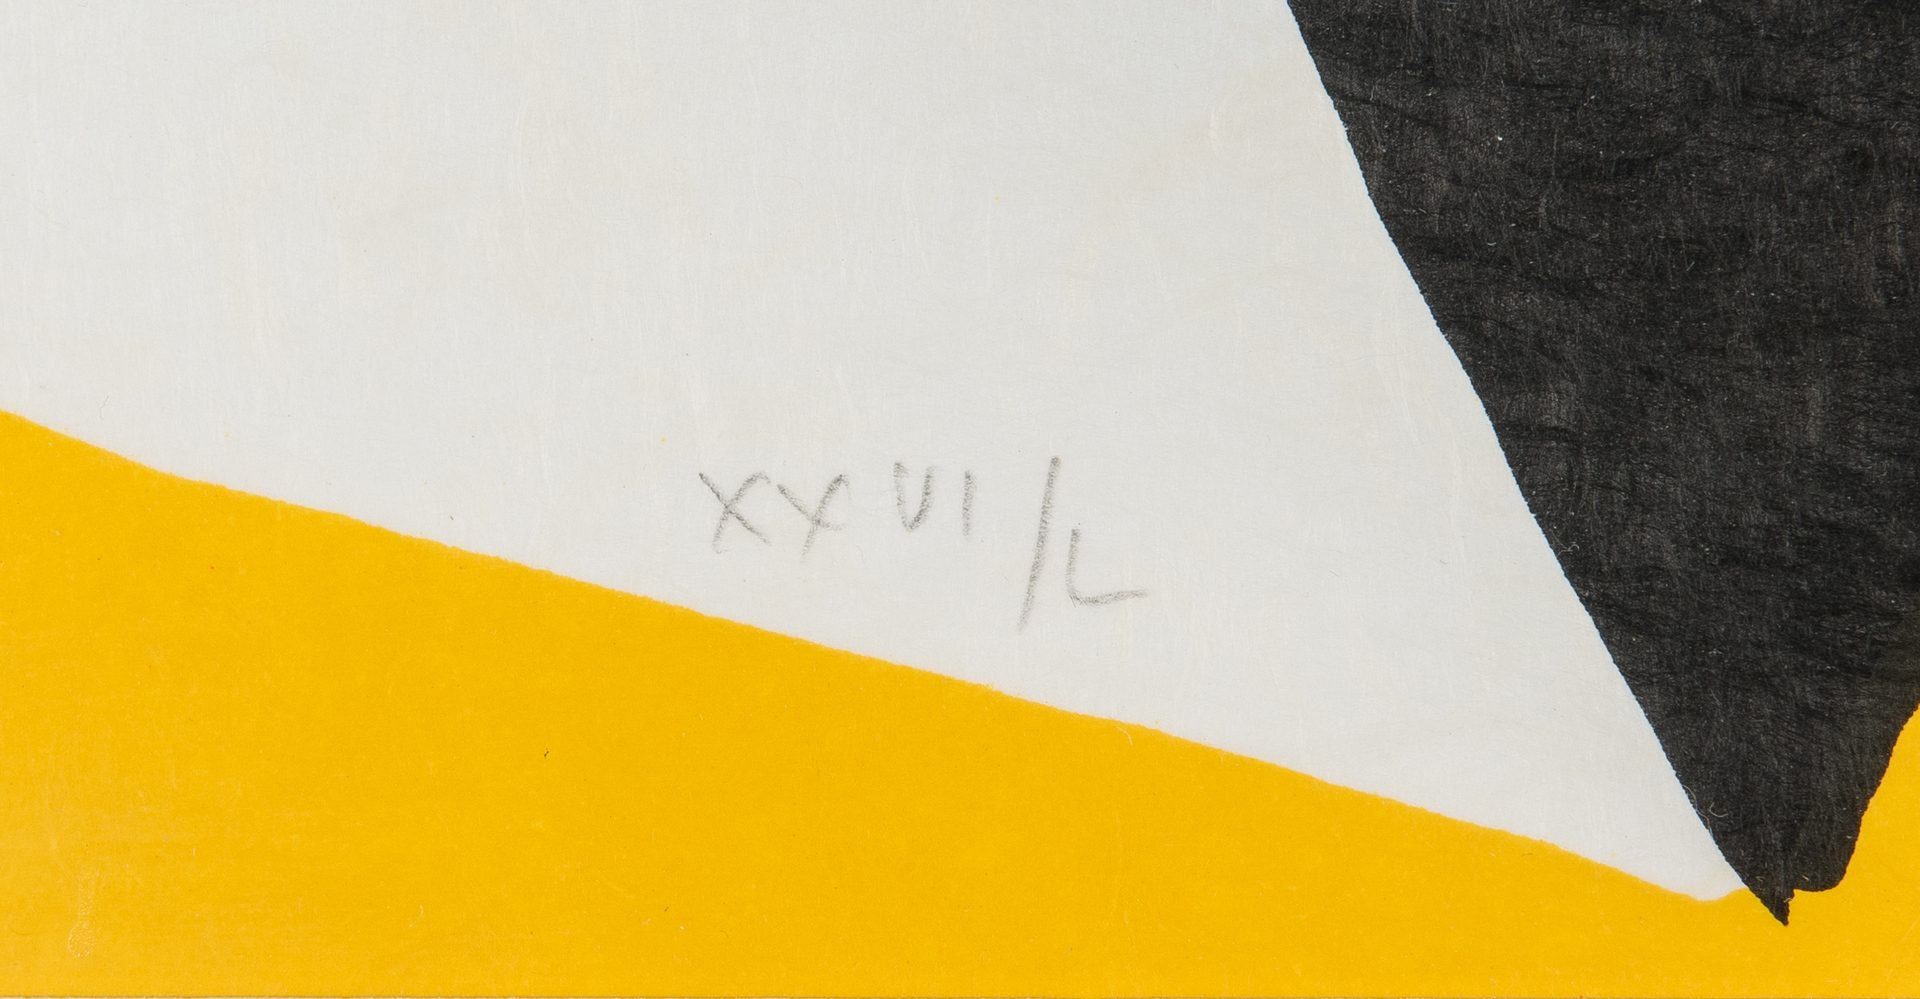 Lot 527: Alexander Calder Signed Litho, Pyramids